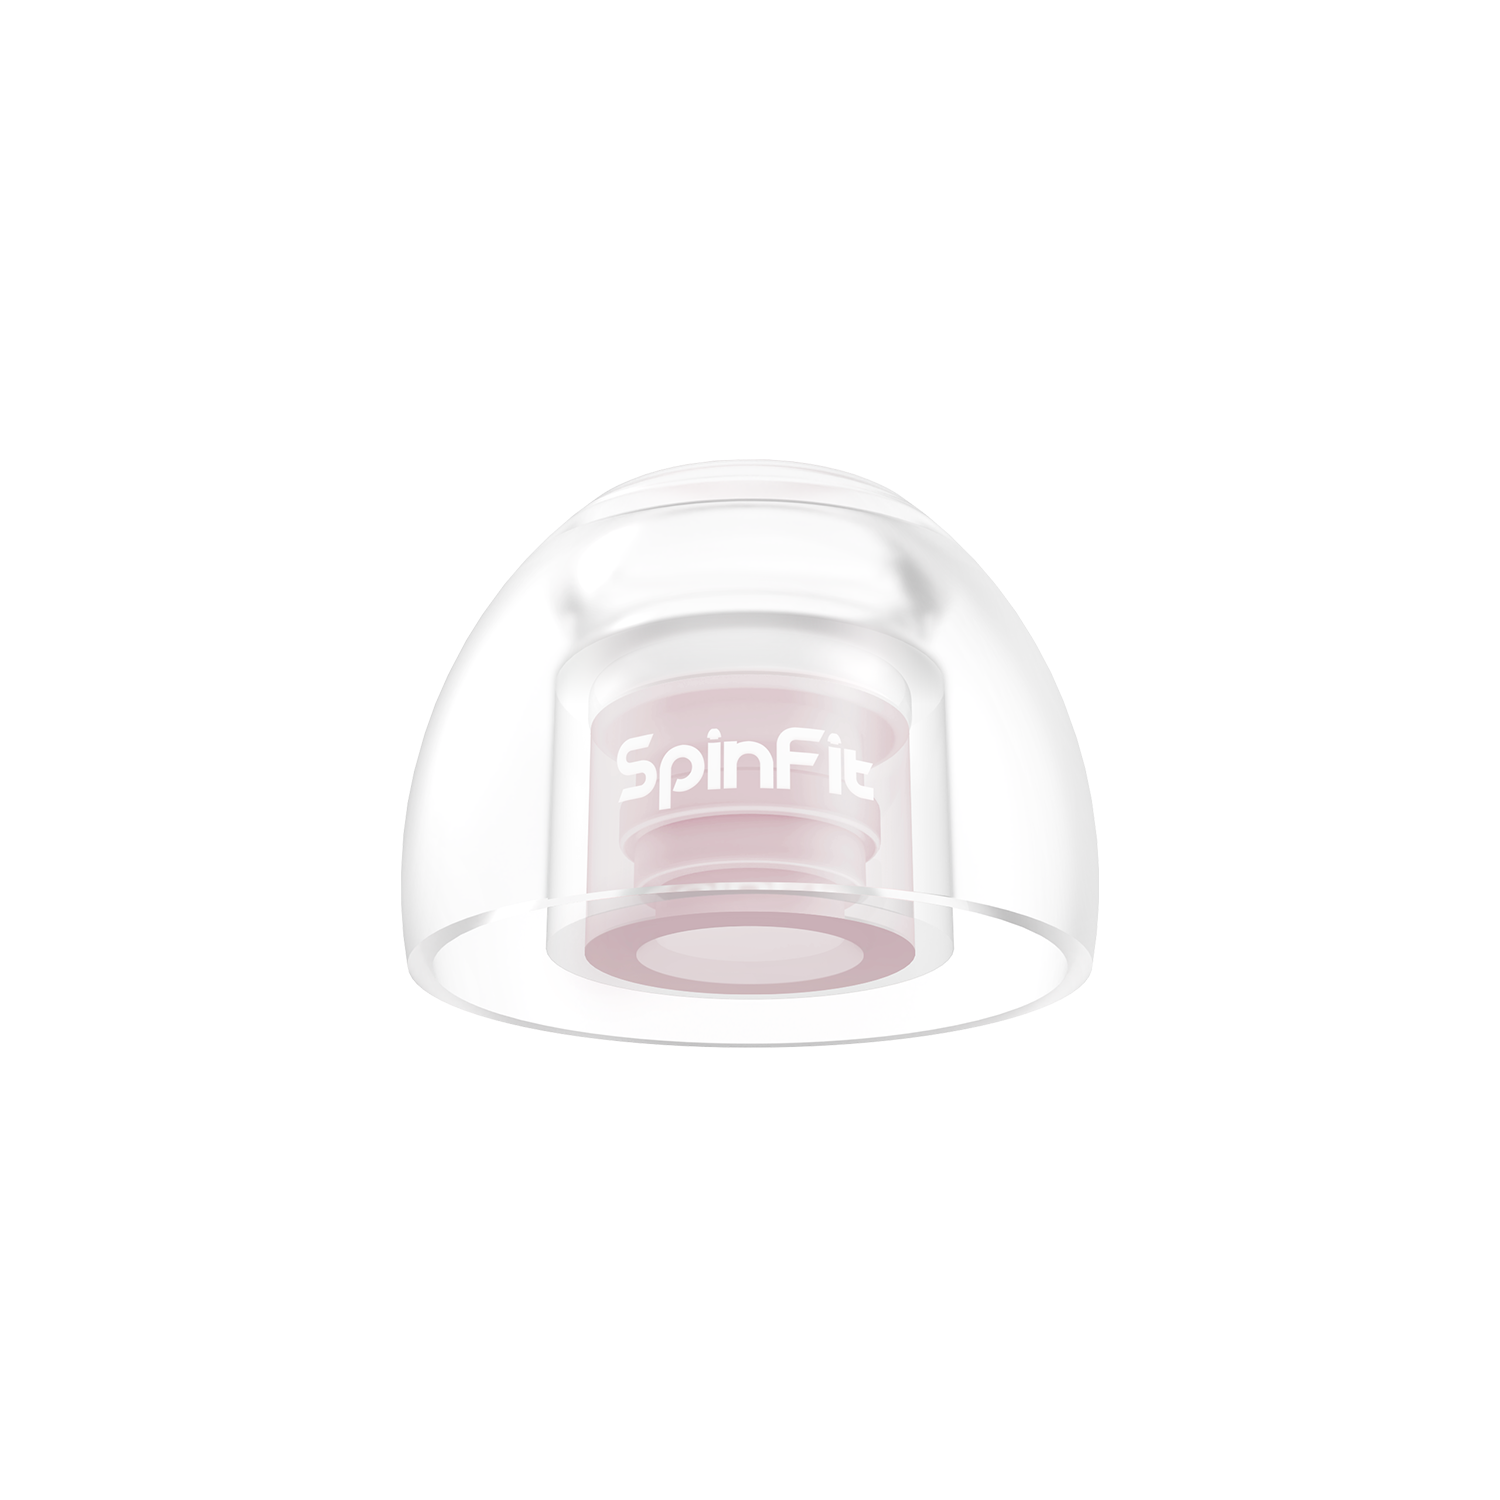 SpinFit（スピンフィット）「OMNI」 イヤーチップ Sサイズ